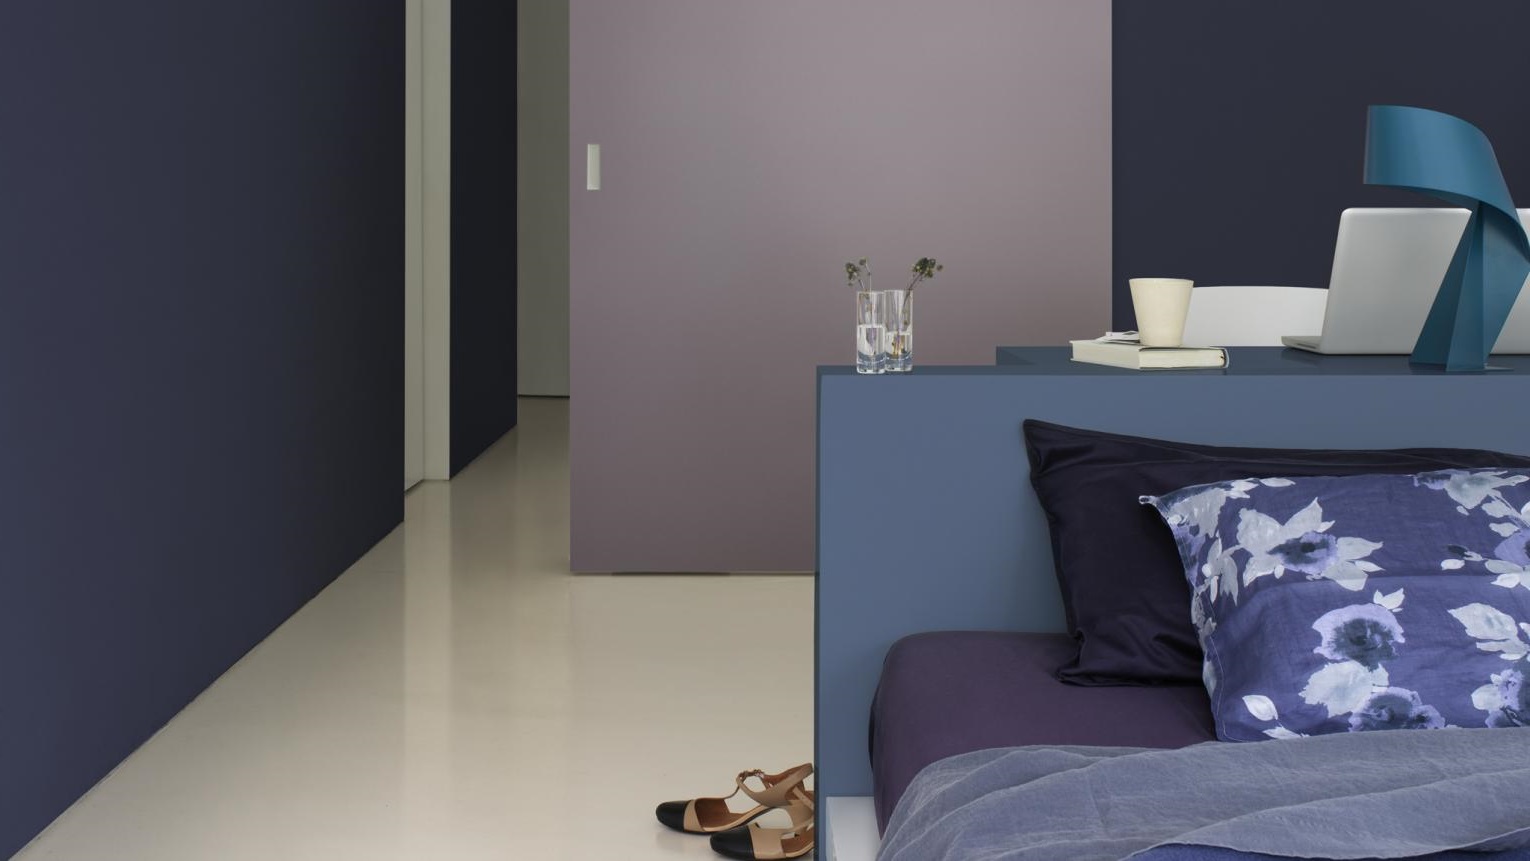 Chambre Violette Et Bleu Avec Des Pans De Murs De Différentes Couleurs 